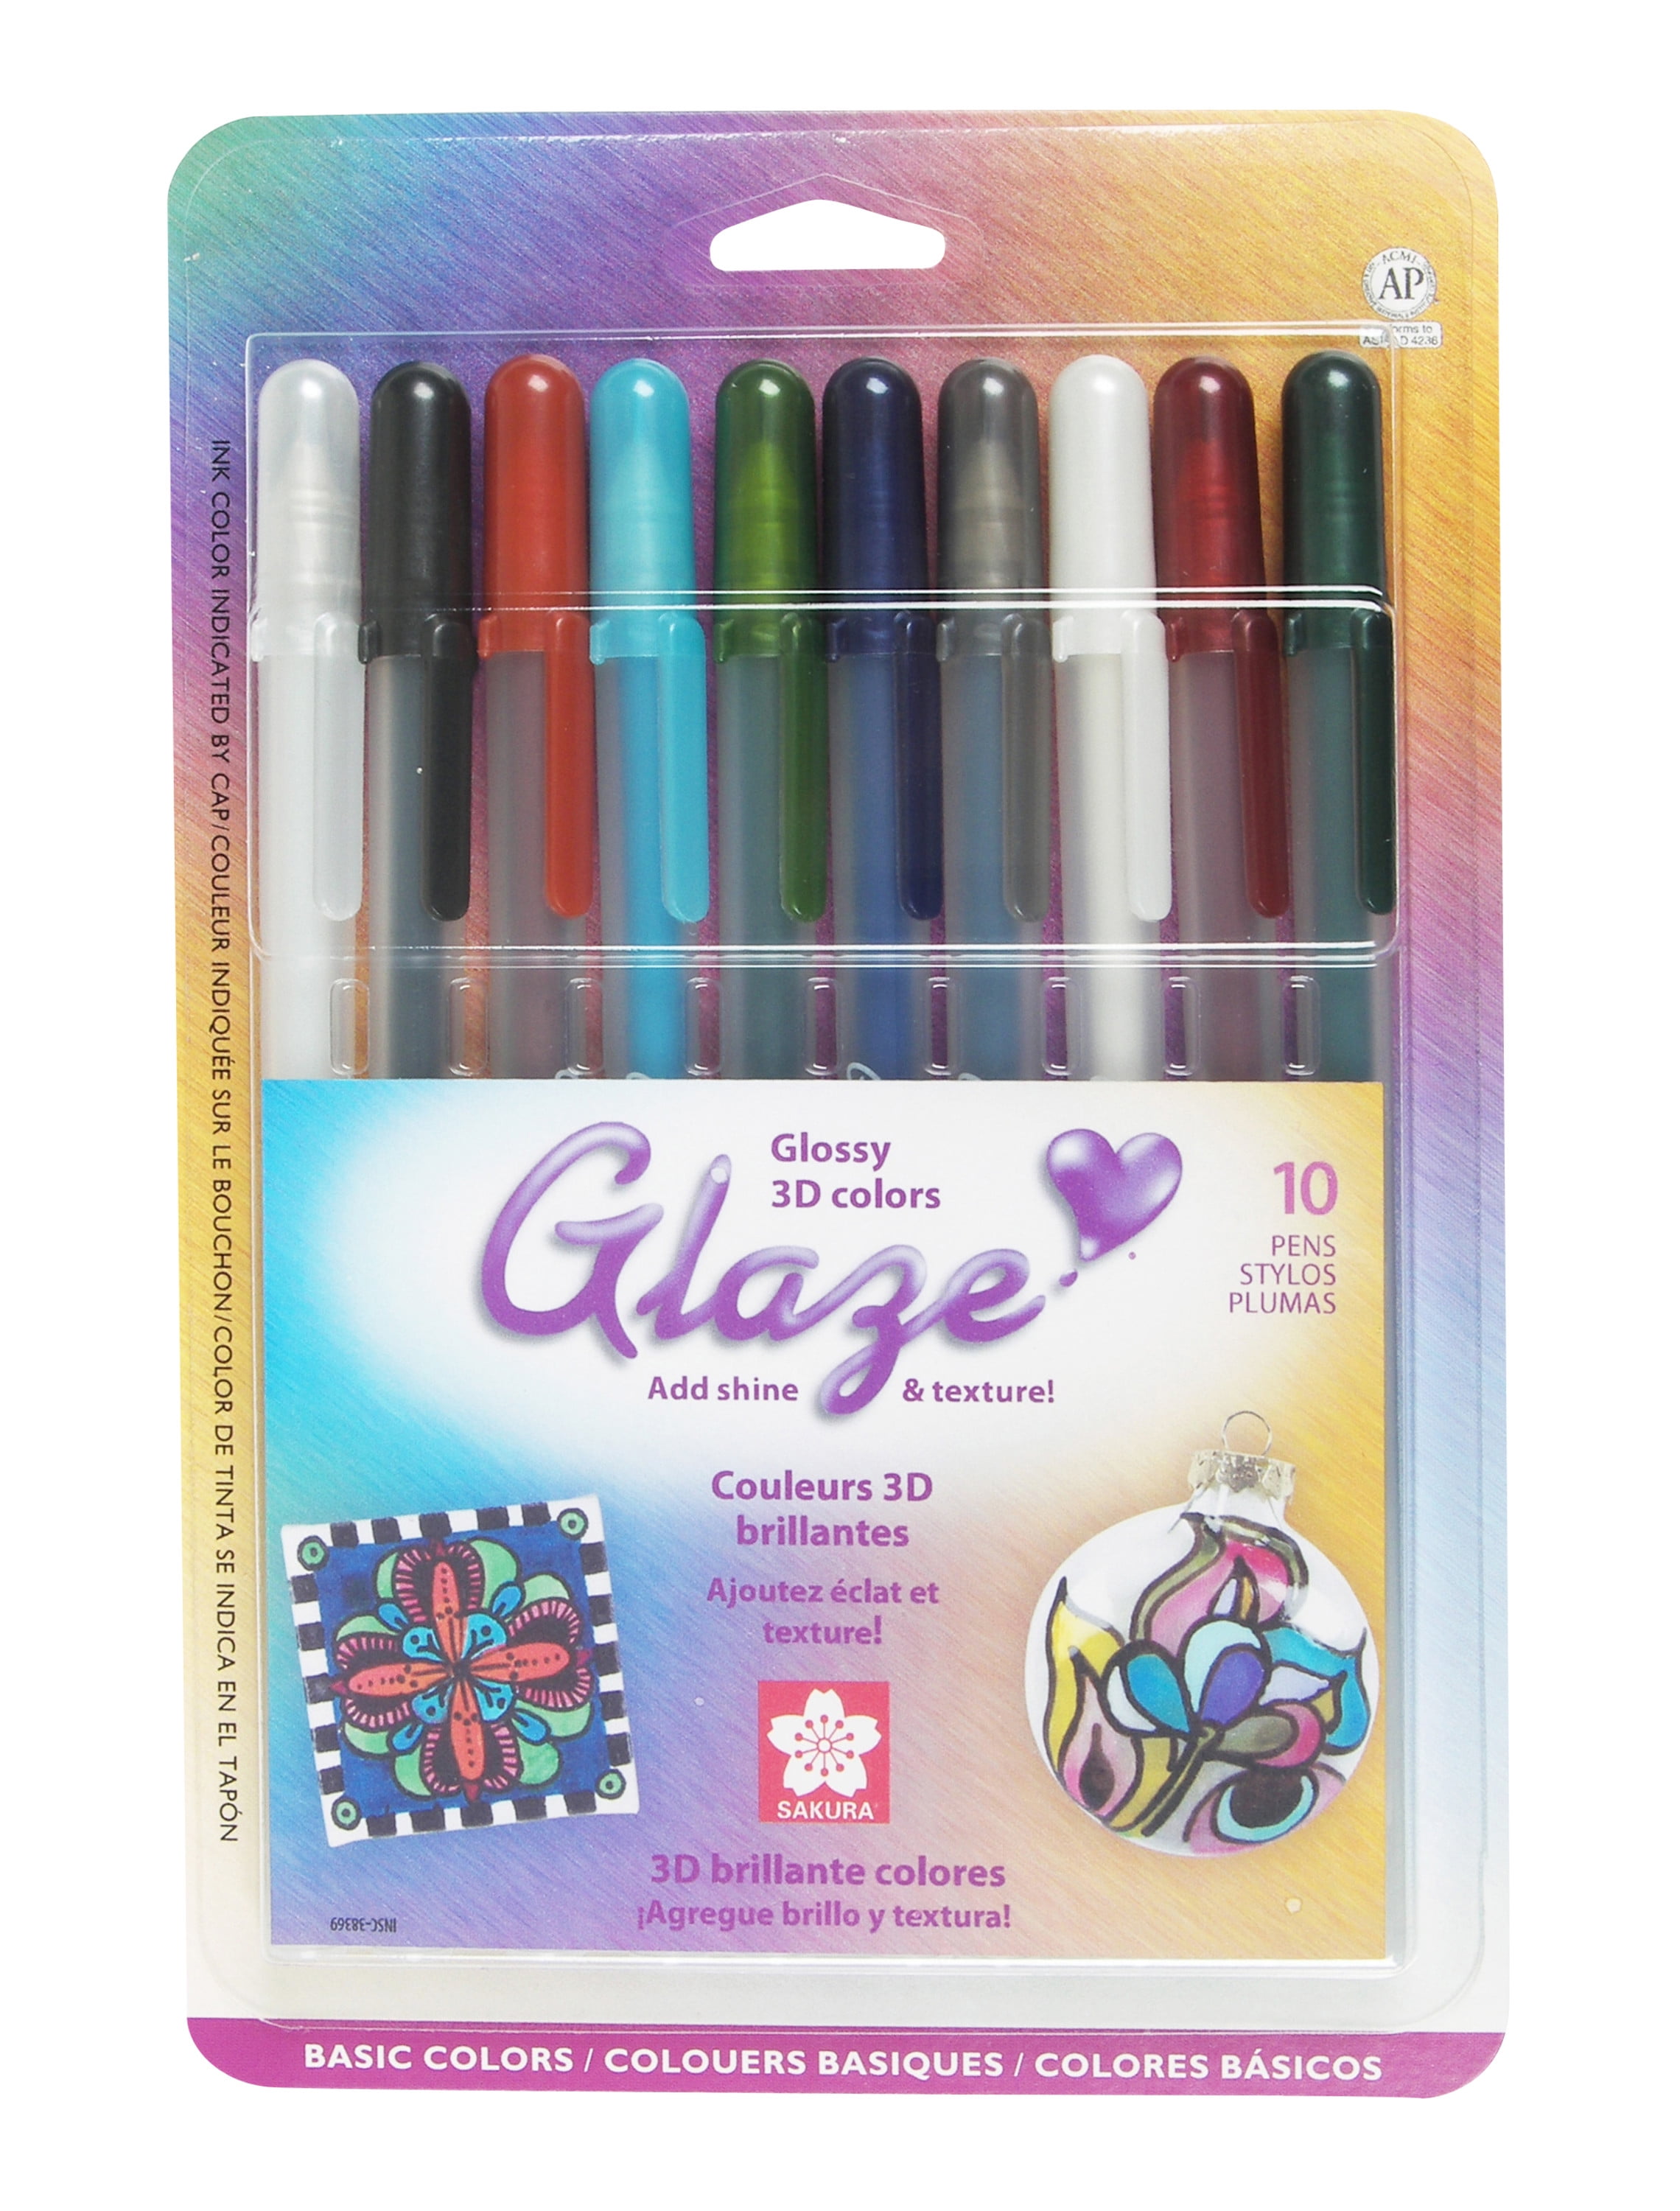 12 Sakura Gelly Roll Glaze Ink 3-D Glossy Color Pen Waterproof